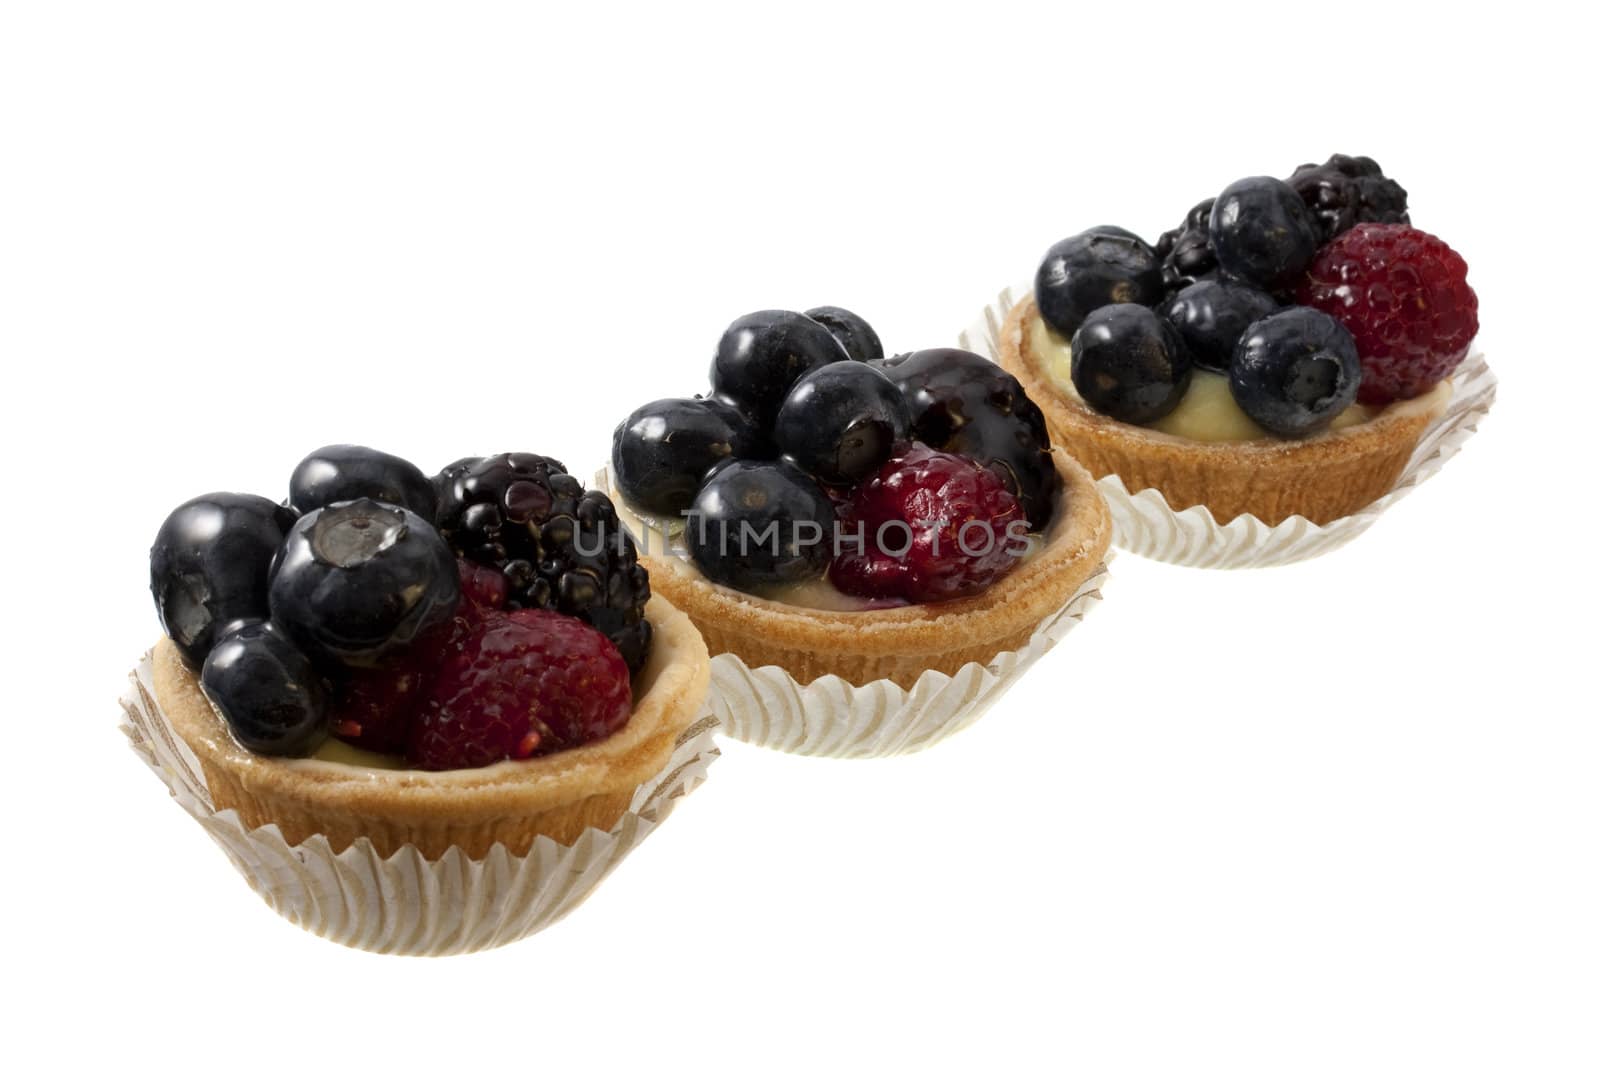 three mini fruit tarts by PixelsAway